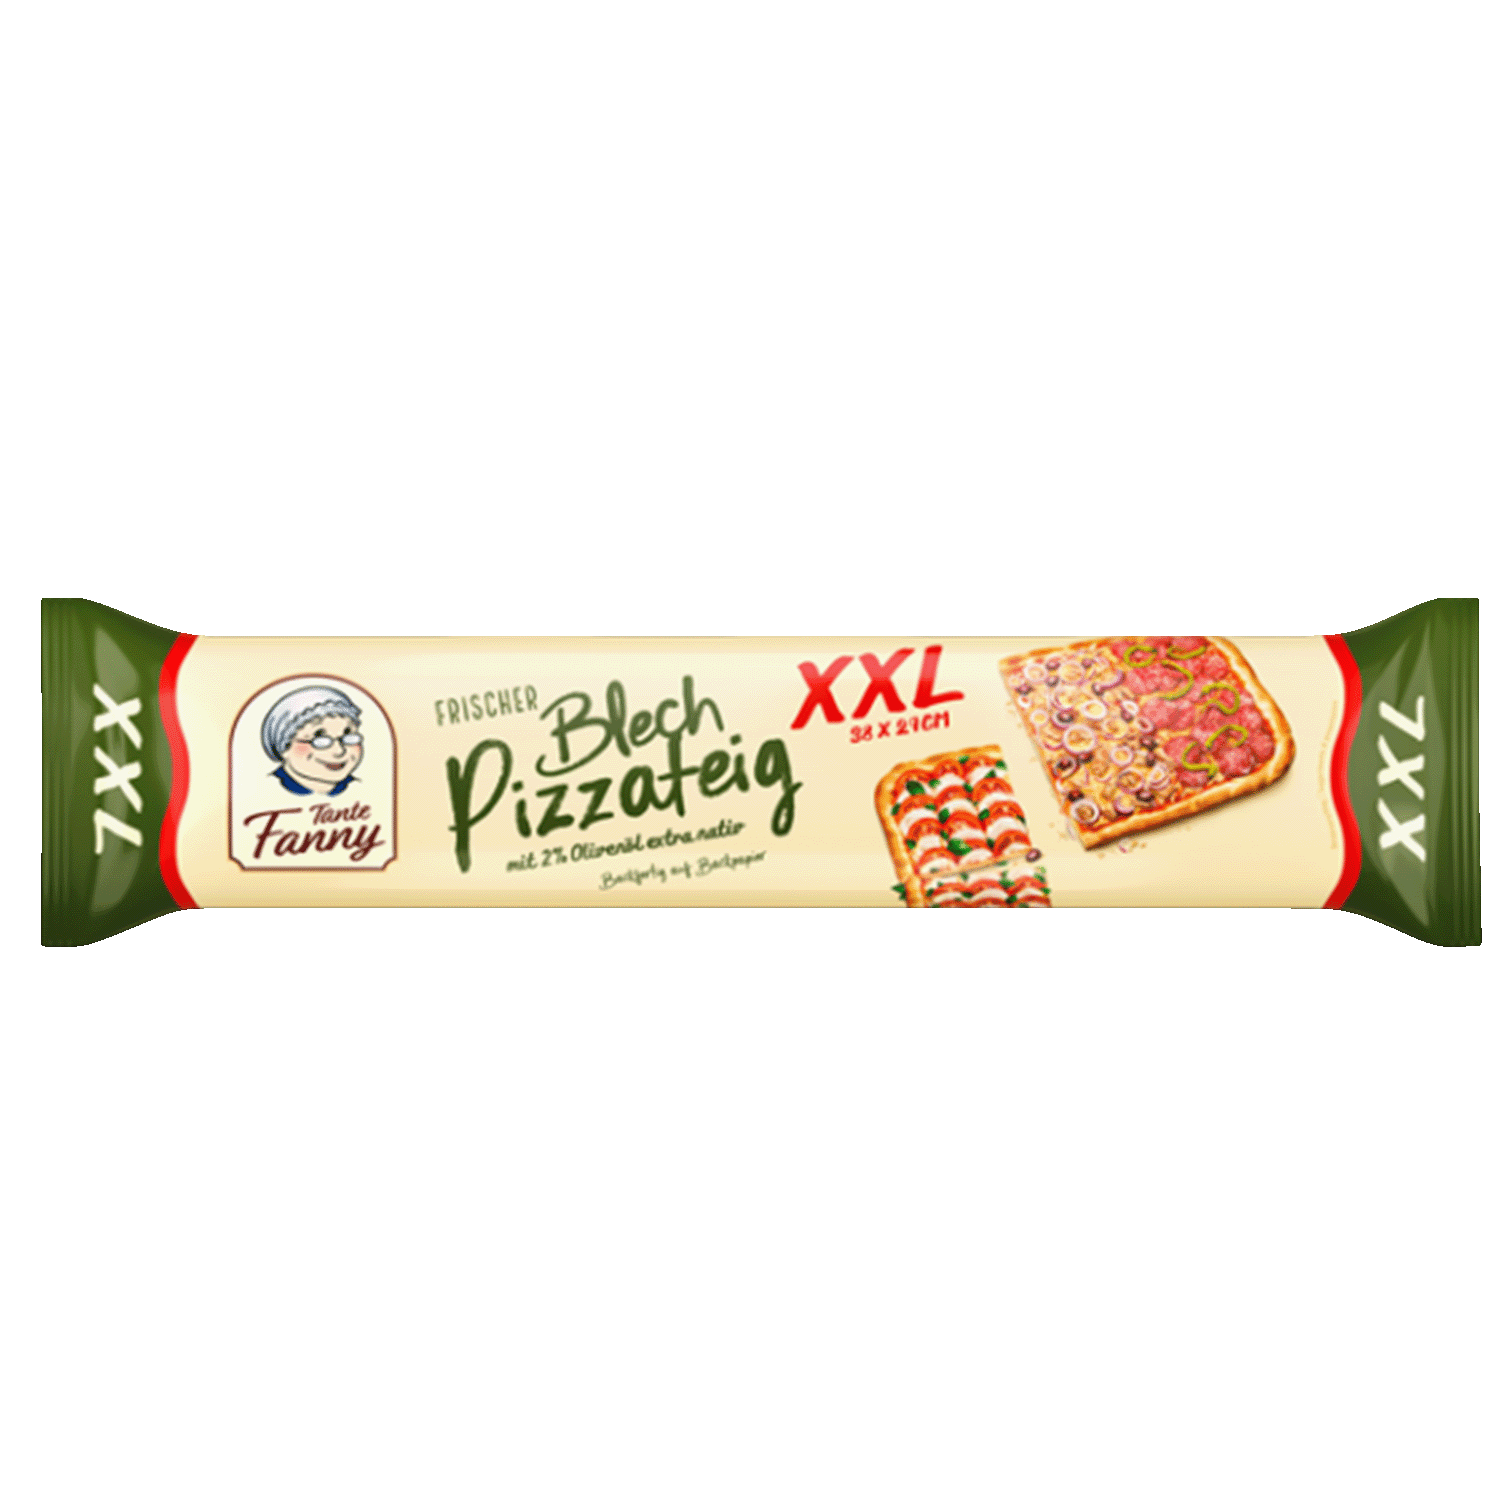 Frischer Blech-Pizzateig XXL, 550g